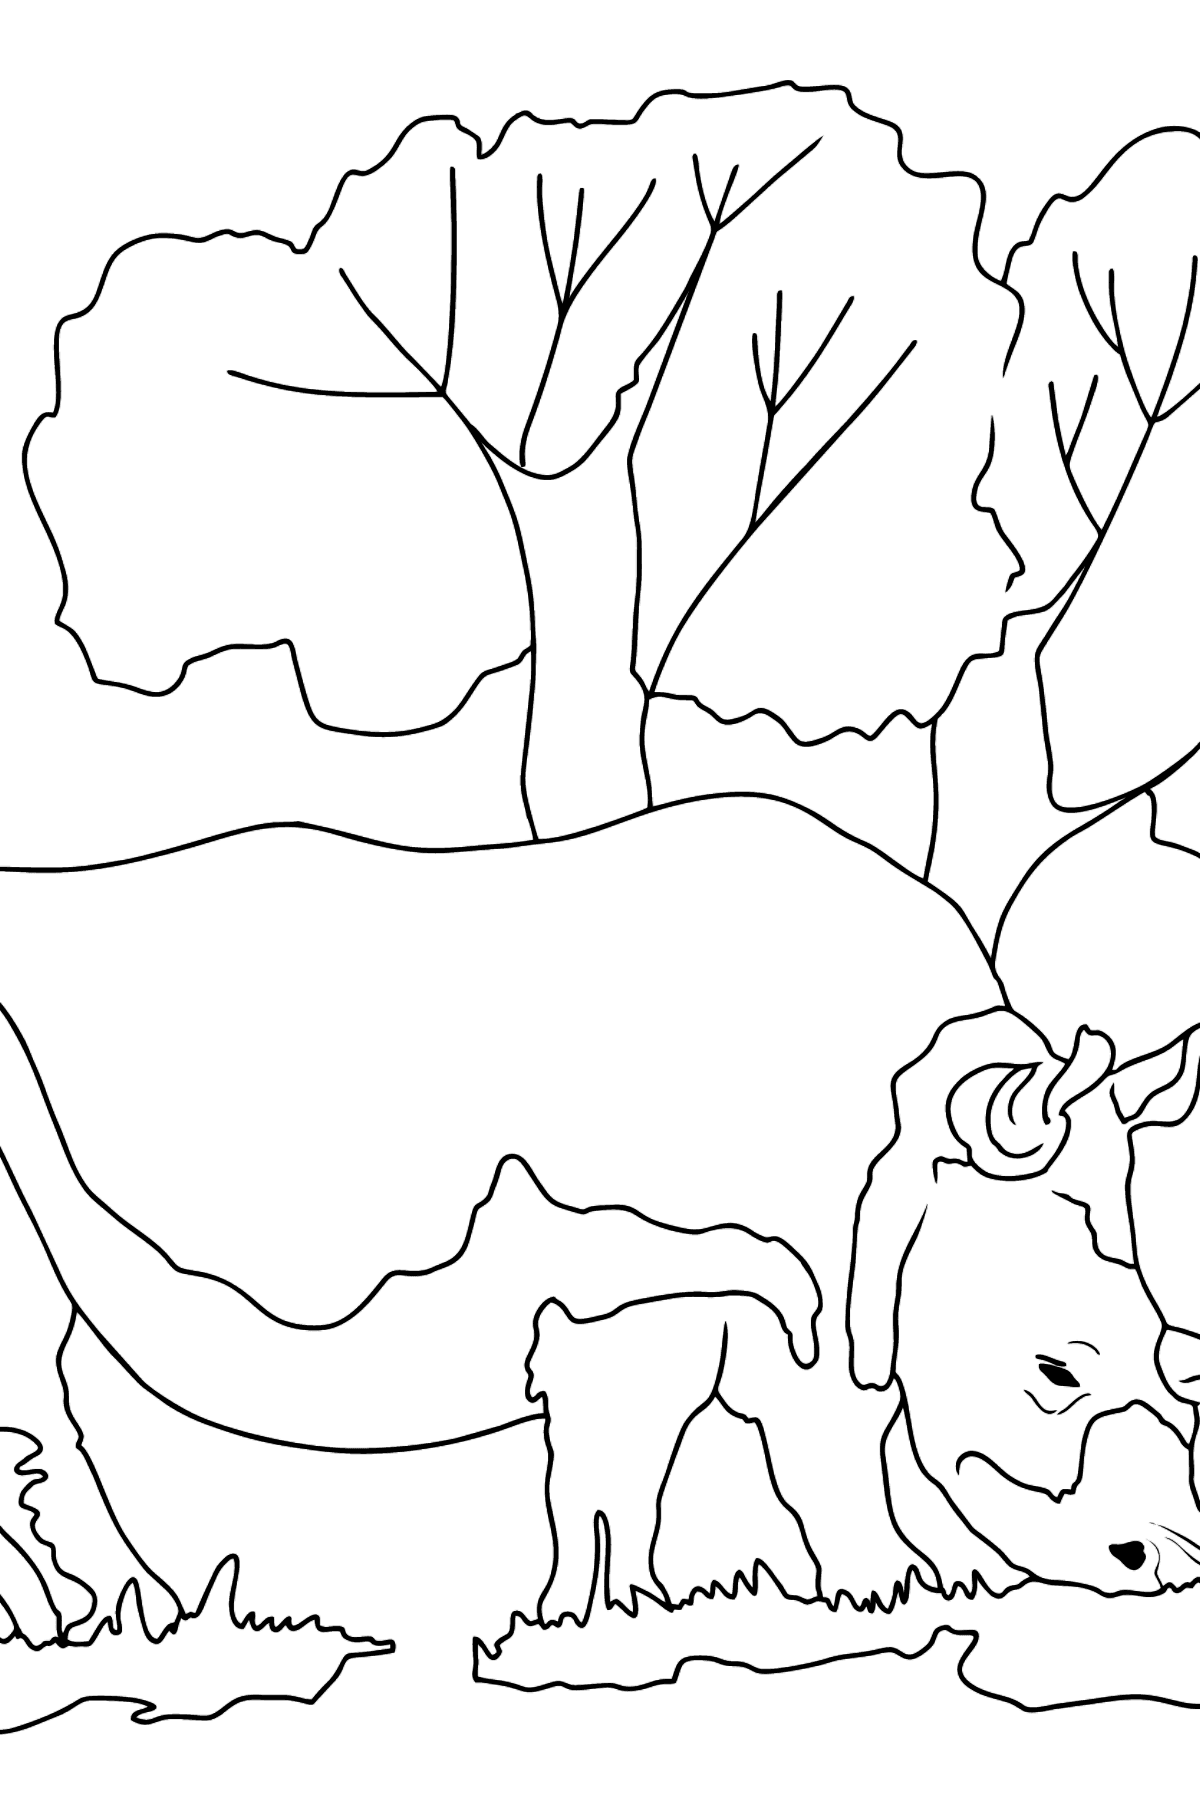 Dibujo para Colorear - Un Rinoceronte Comiendo Césped - Dibujos para Colorear para Niños